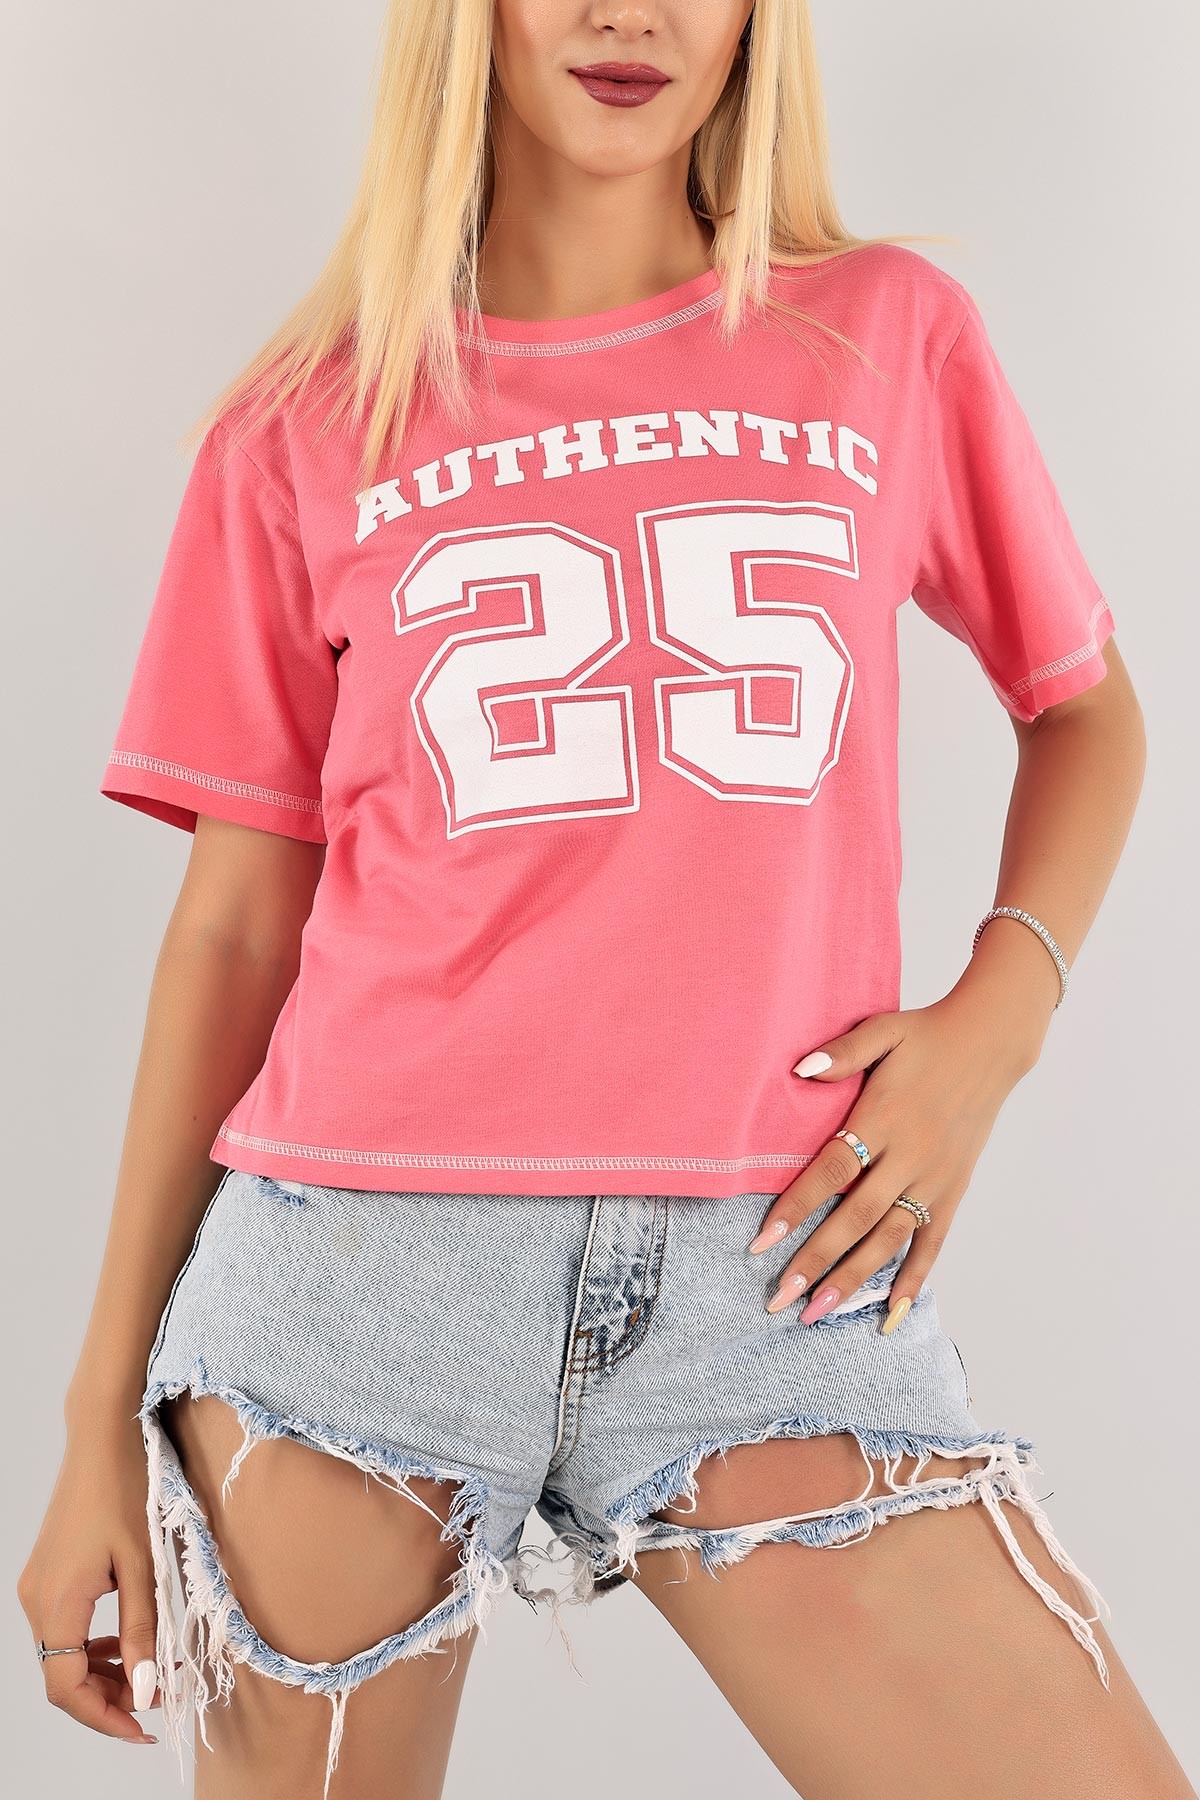 Women's pink T-shirt